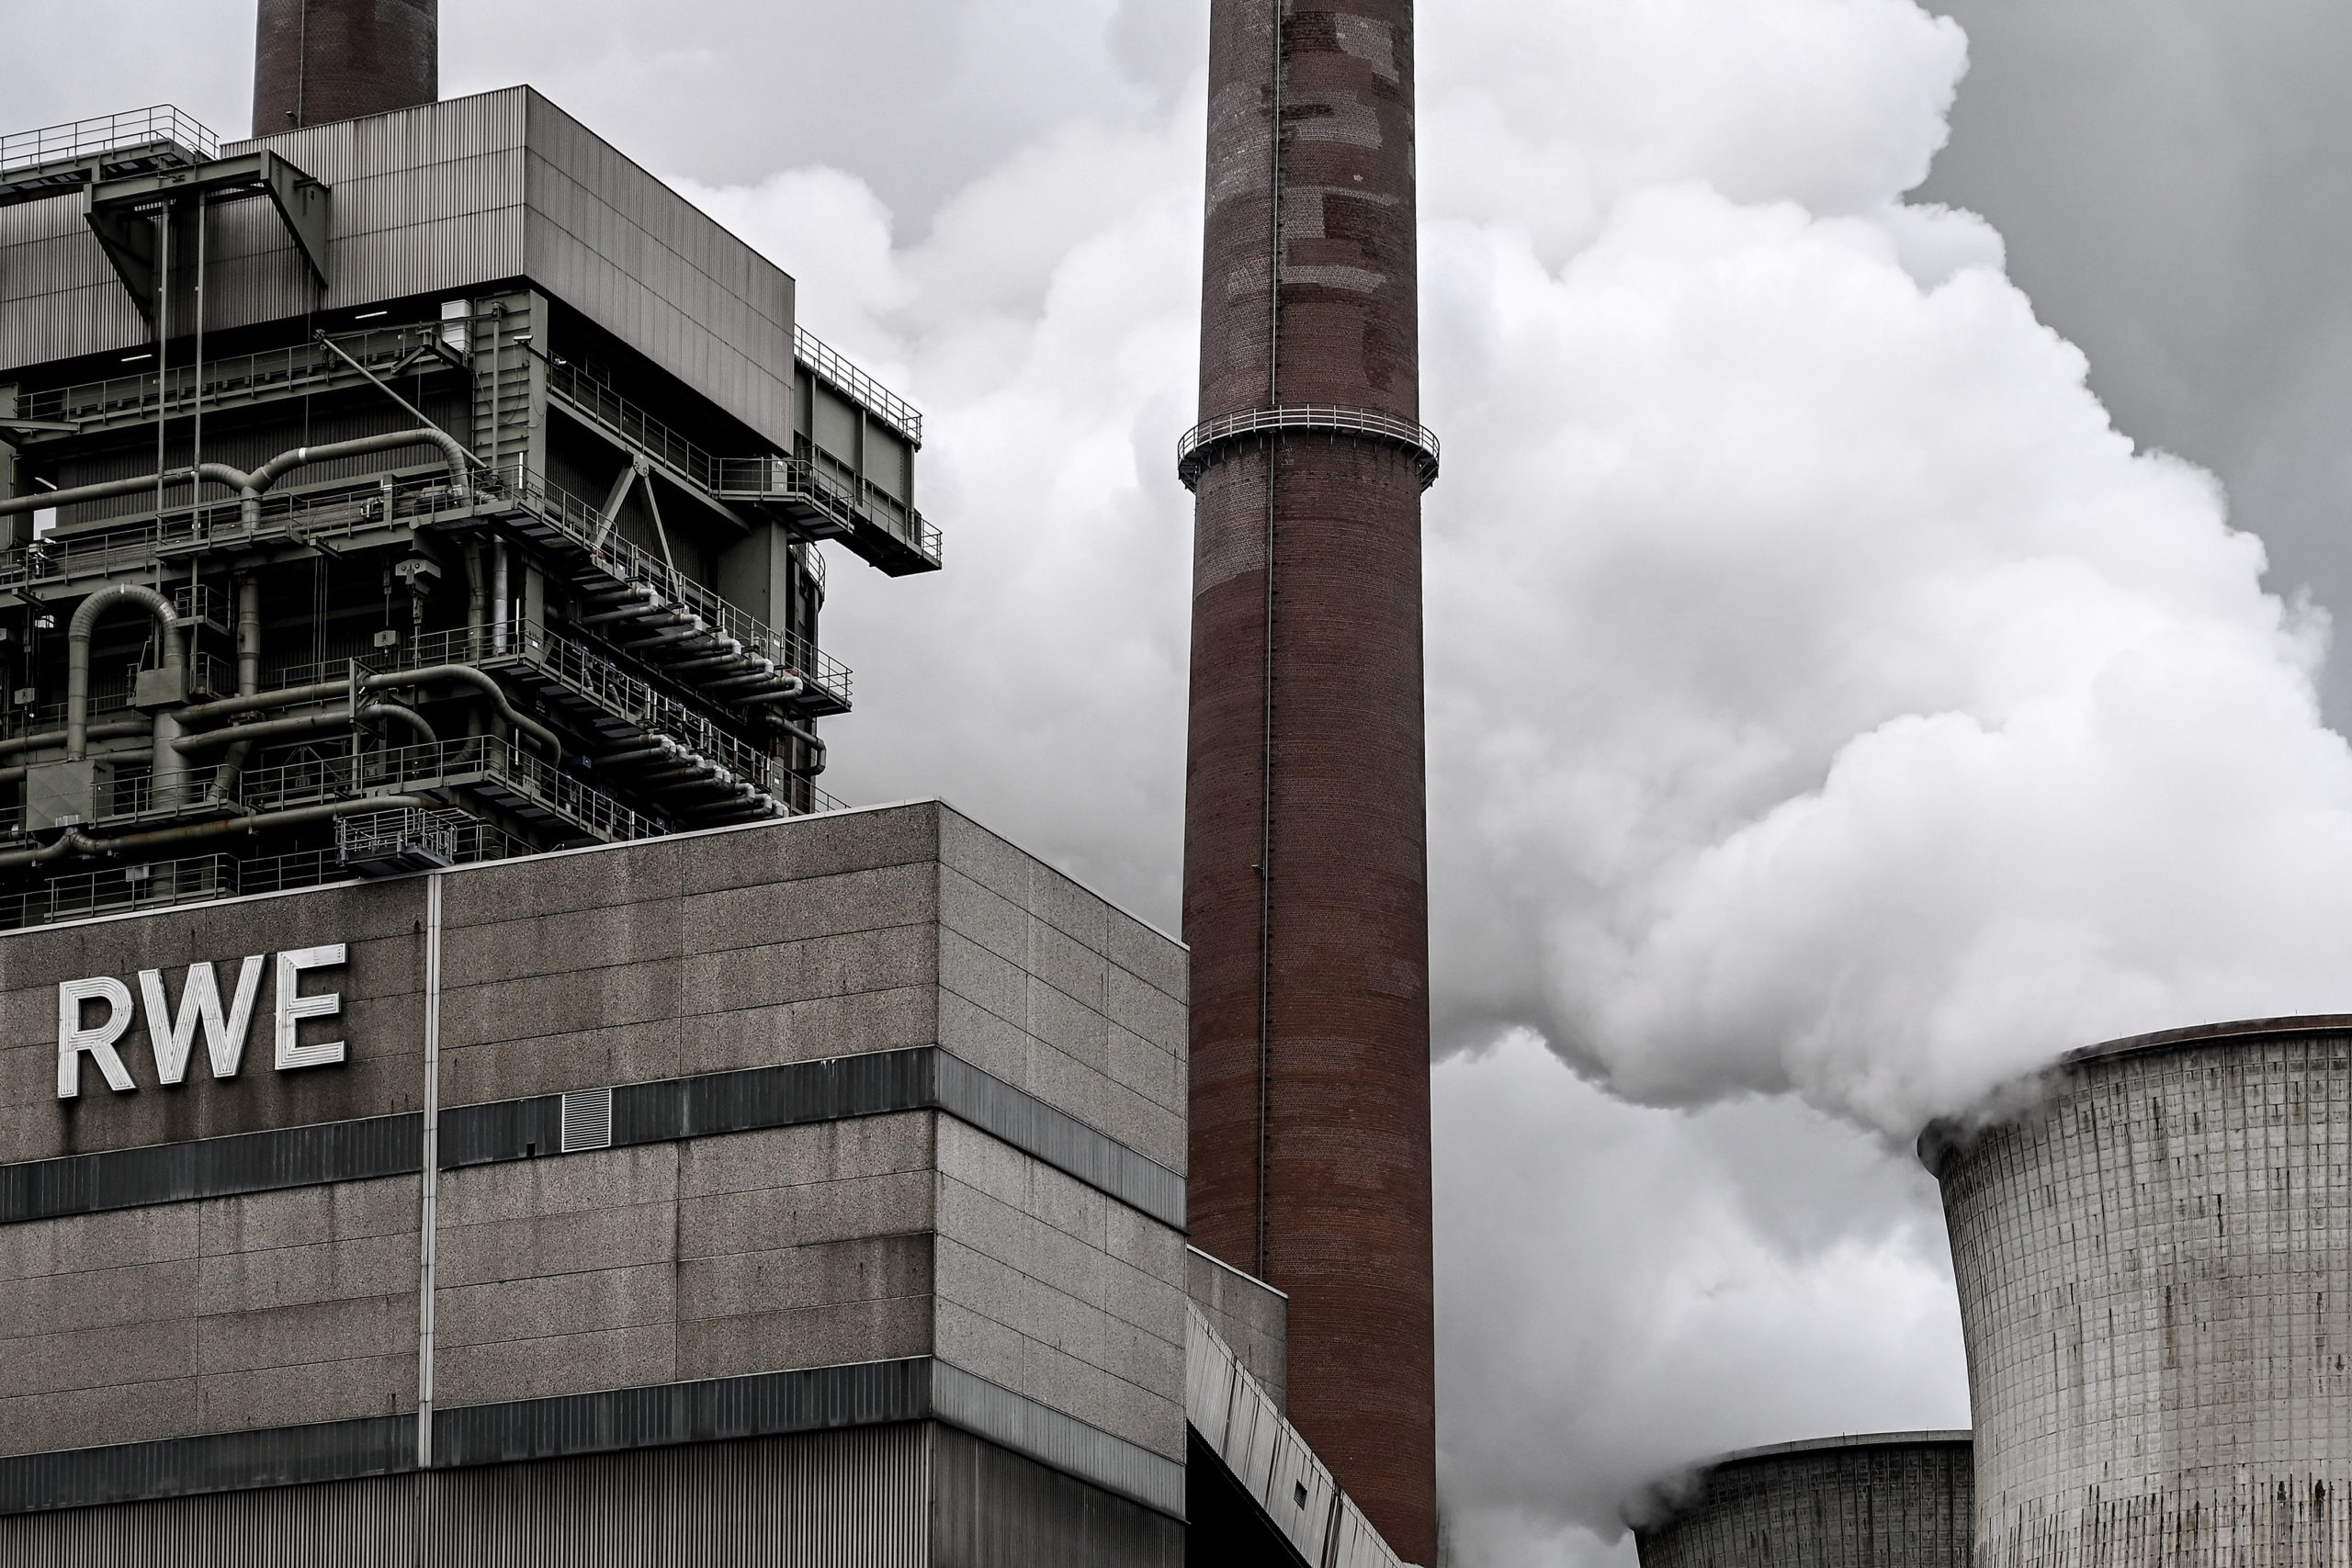 Neurathin hiilivoimala Saksassa suljettiin huhtikuun alussa, mutta voimalayhtiö on valmis jatkamaan tuotantoa, jos kaasun saanti Venäjältä sakkaa.